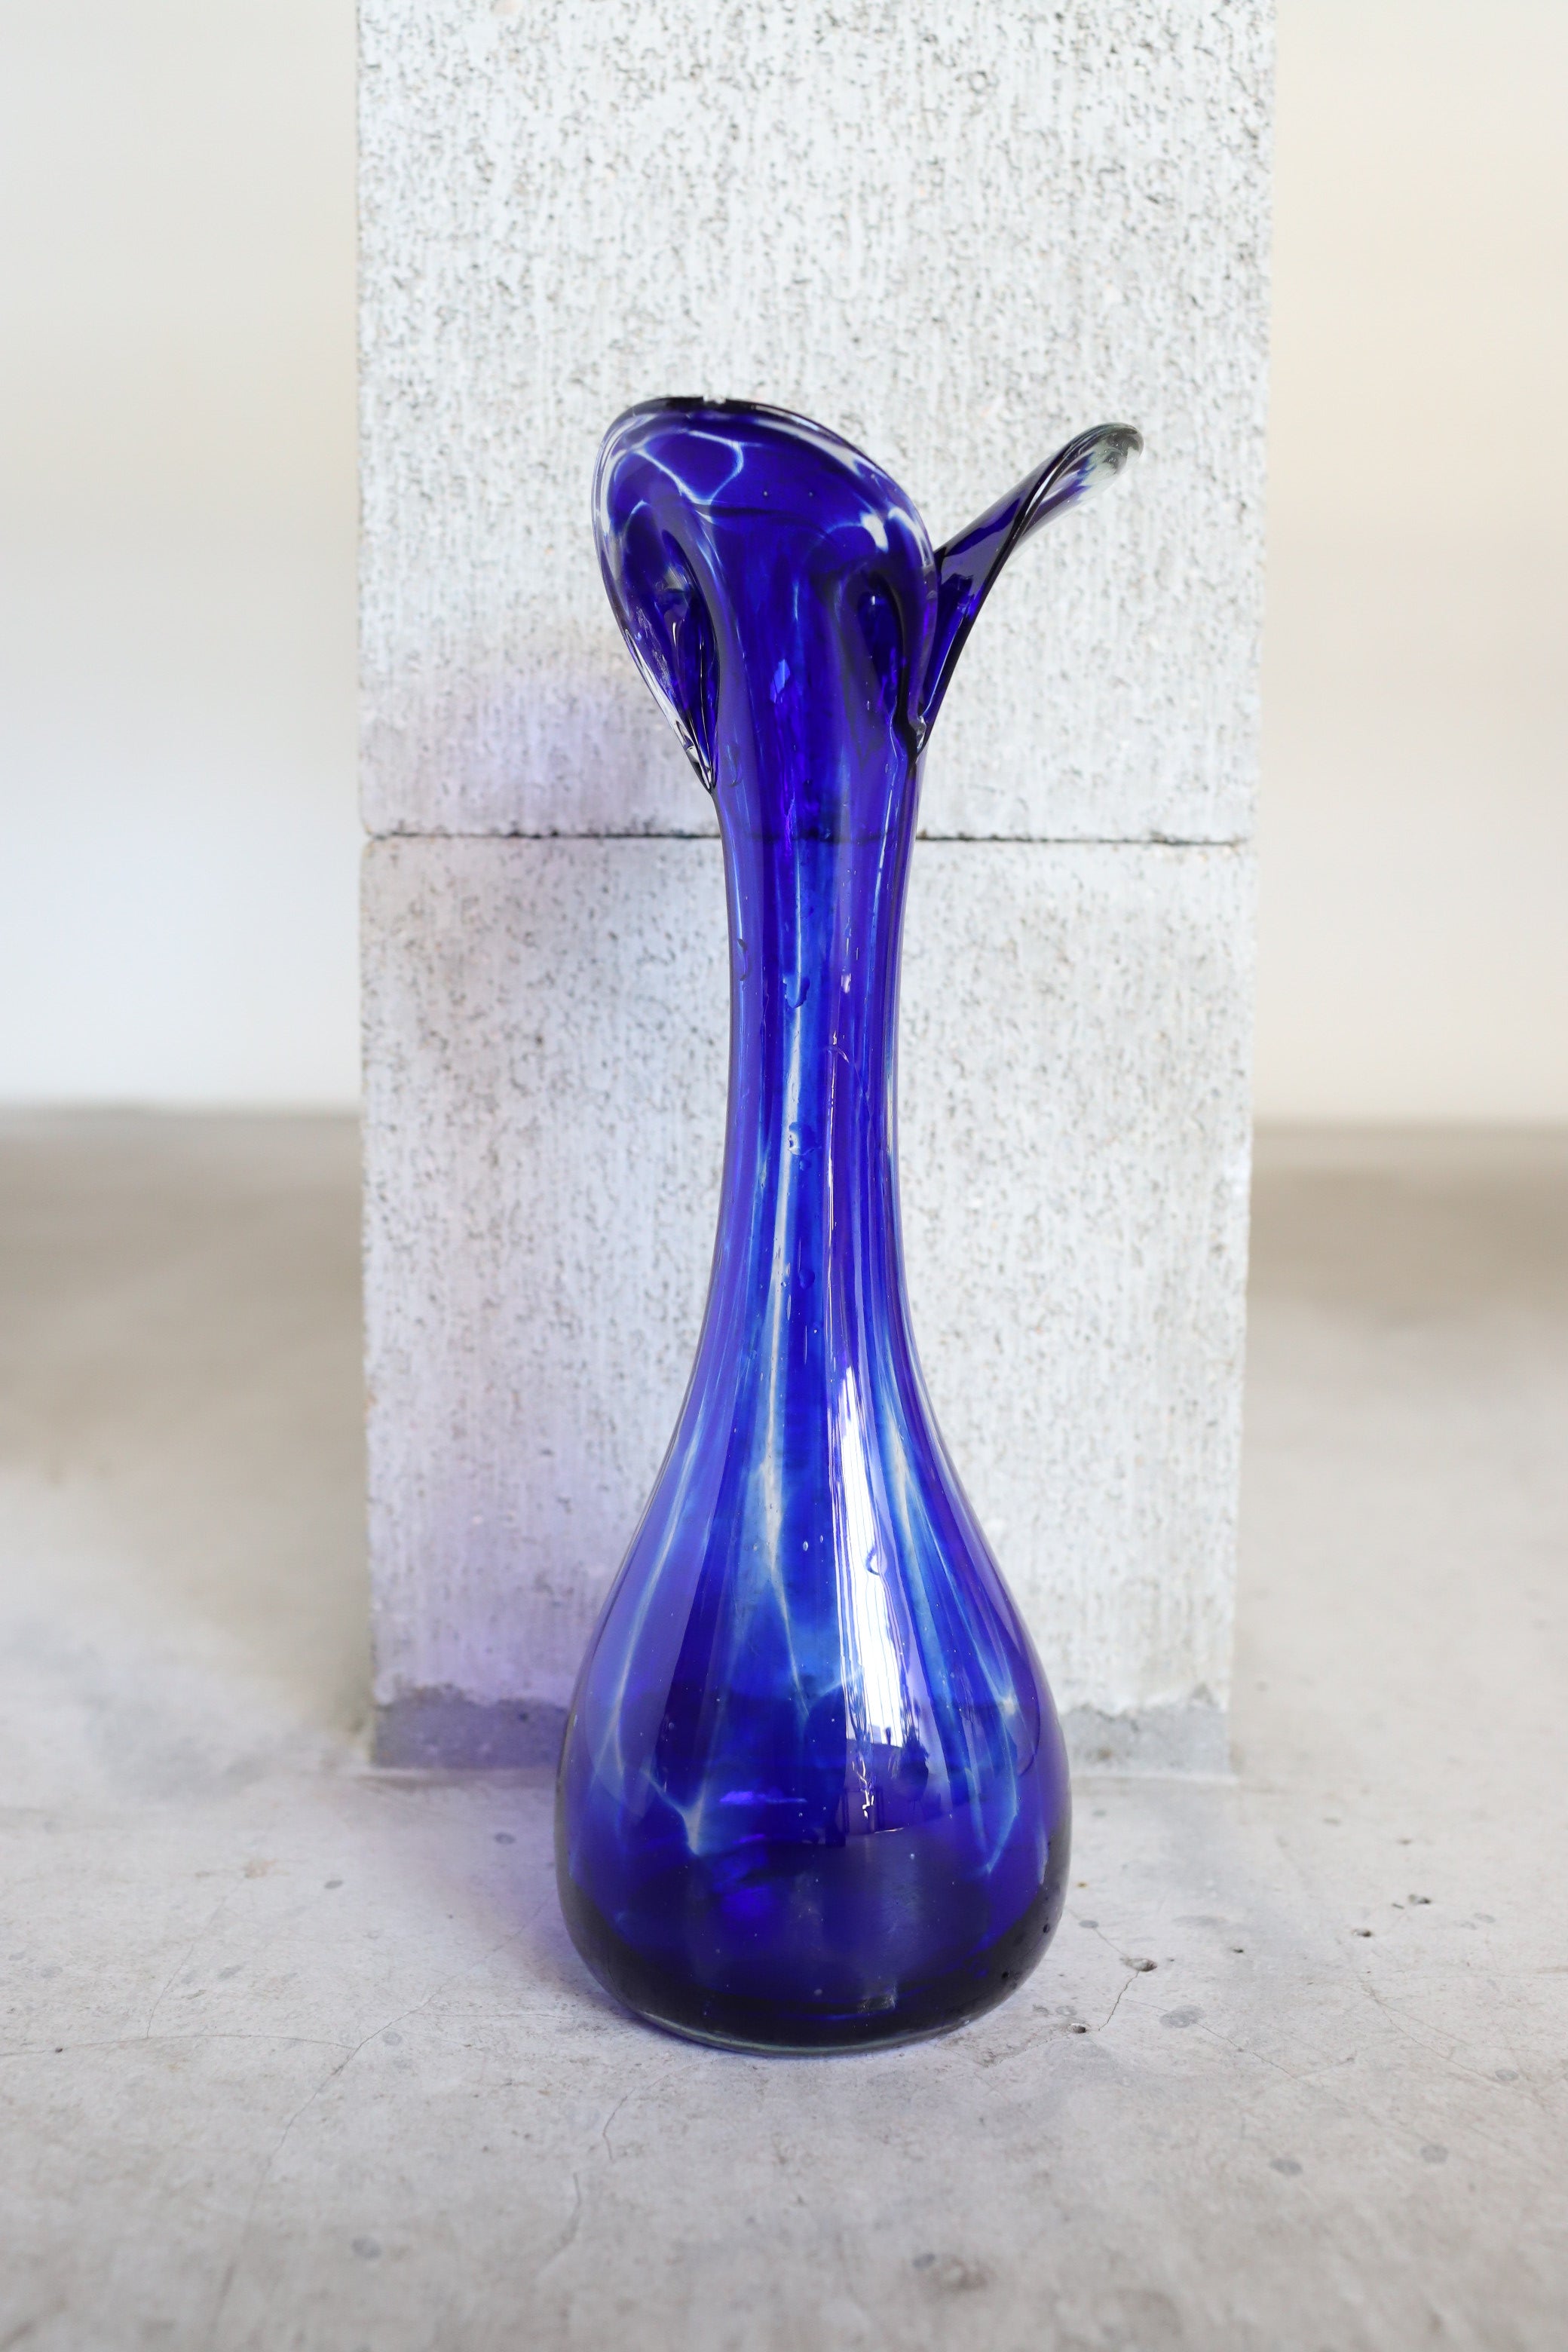 February Vase #9